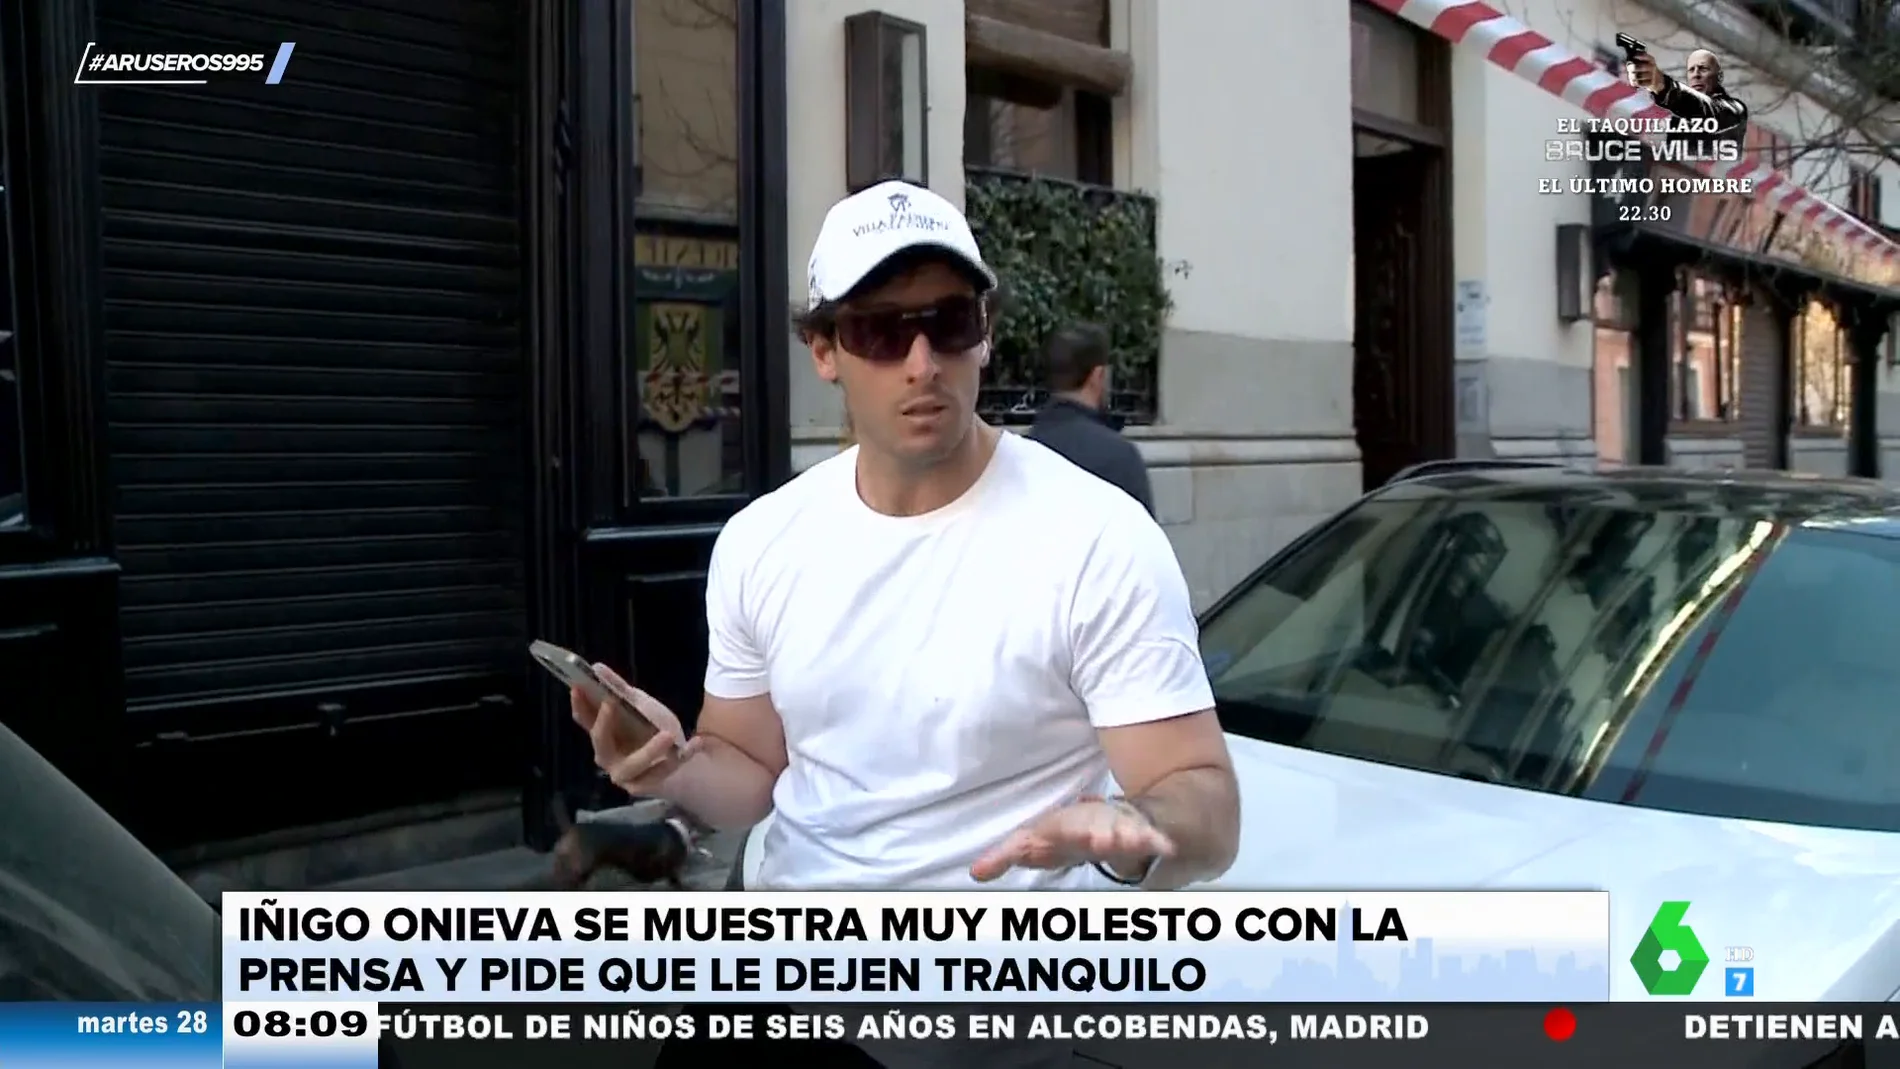 Alfonso Arús alucina con la larga videollamada de Íñigo Onieva en la calle para evitar a los reporteros